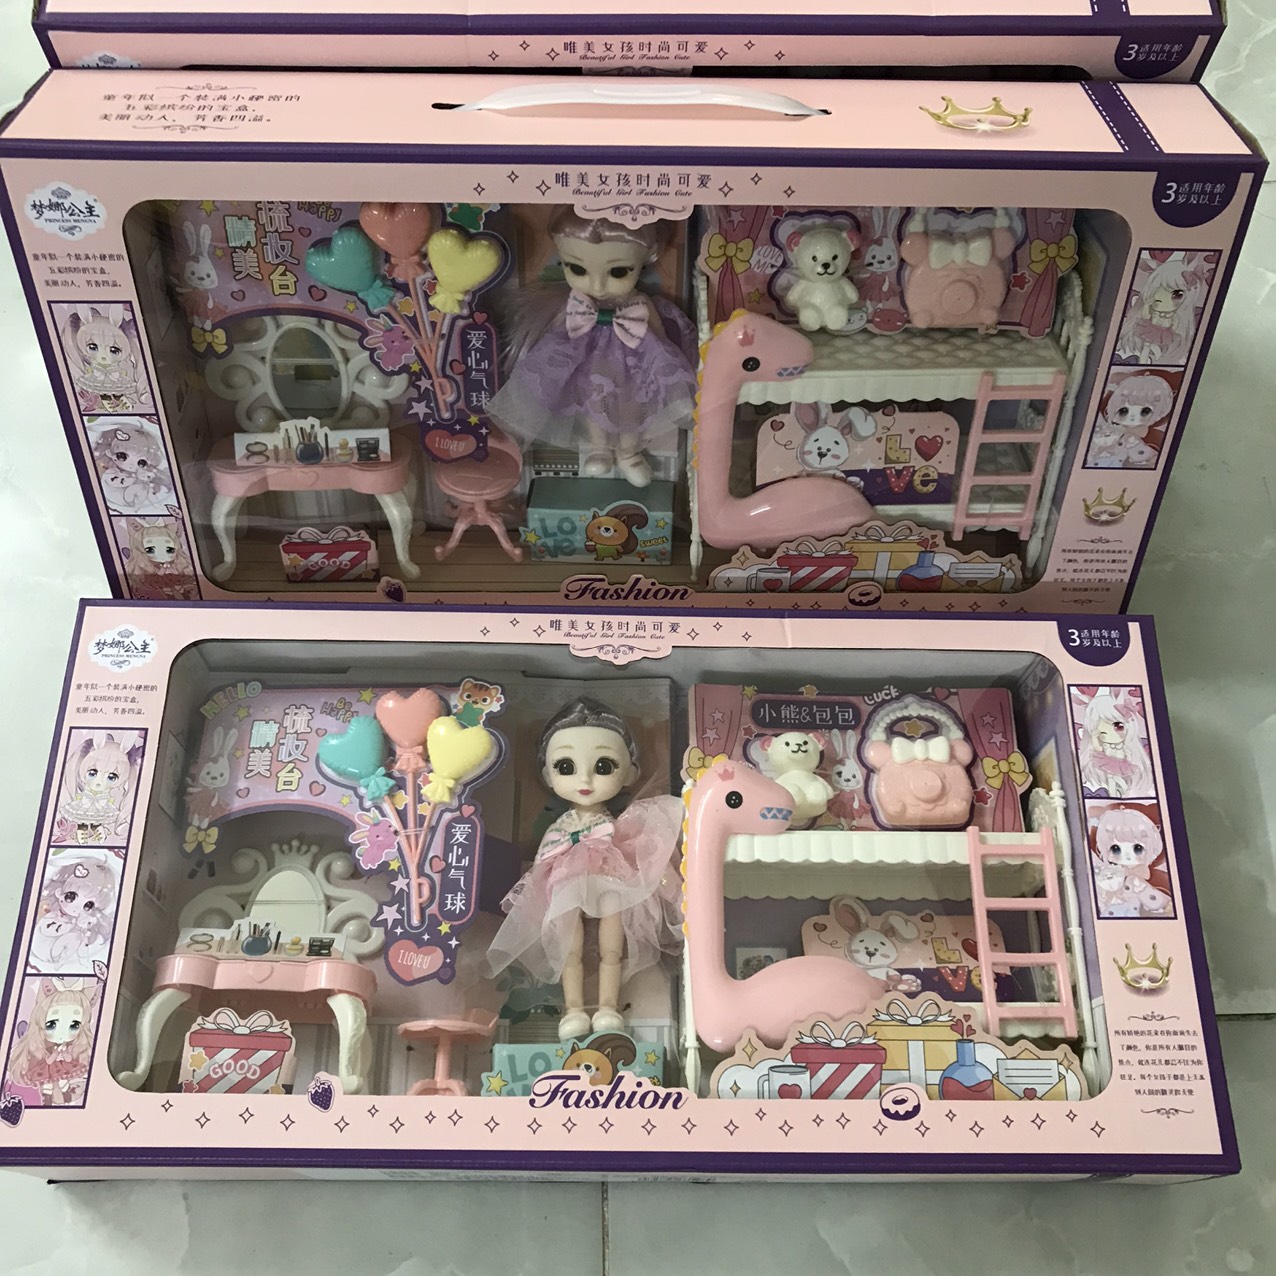 Đồ Chơi Cho Bé Gái Freeship Đồ Chơi Búp Bê Barbie Công Chúa Hộp Quà Tặng Sinh Nhật Cho Bé - Đồ Chơi Trẻ Em HT SYS - Đồ Chơi Búp Bê Công Chúa Kèm Bàn Trang Điểm